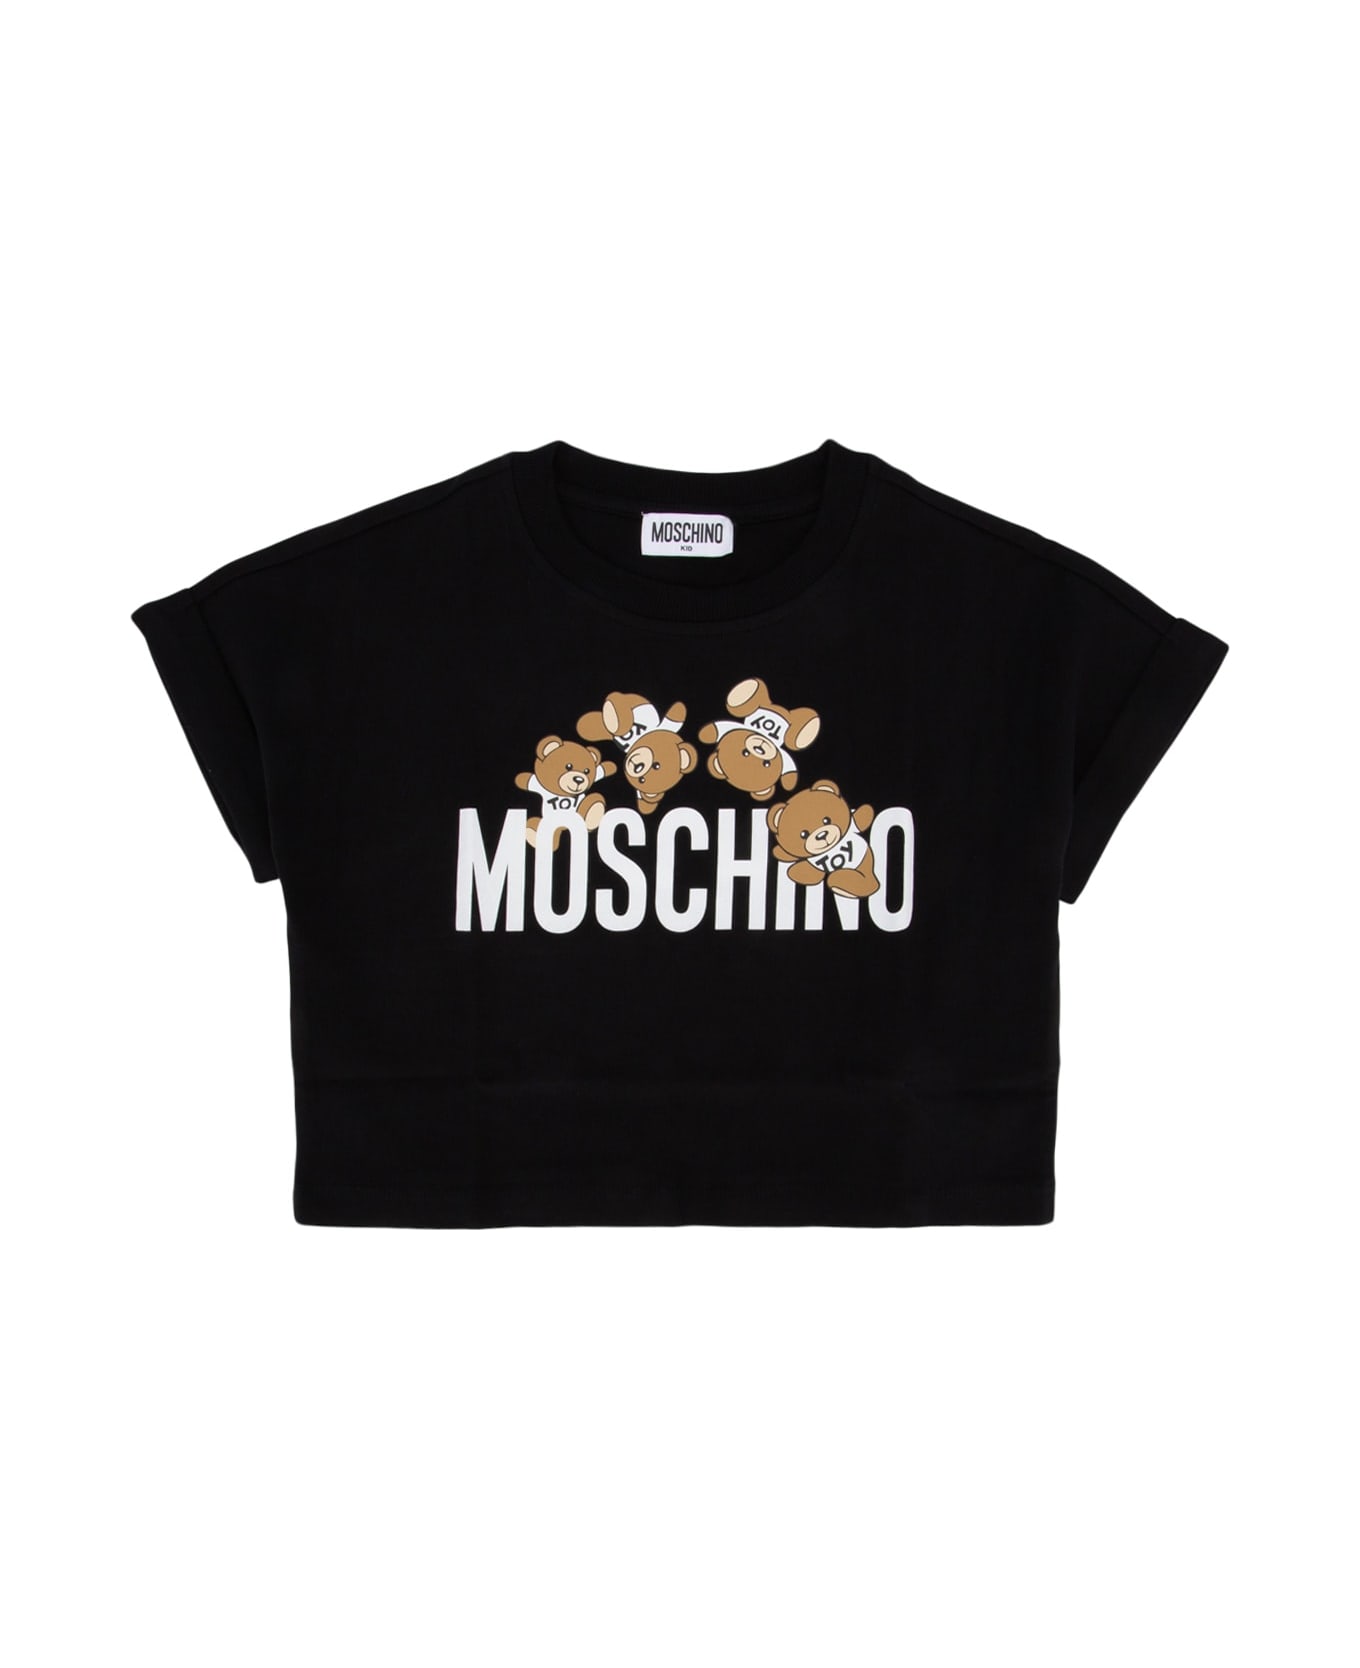 Moschino T-shirt - Nero